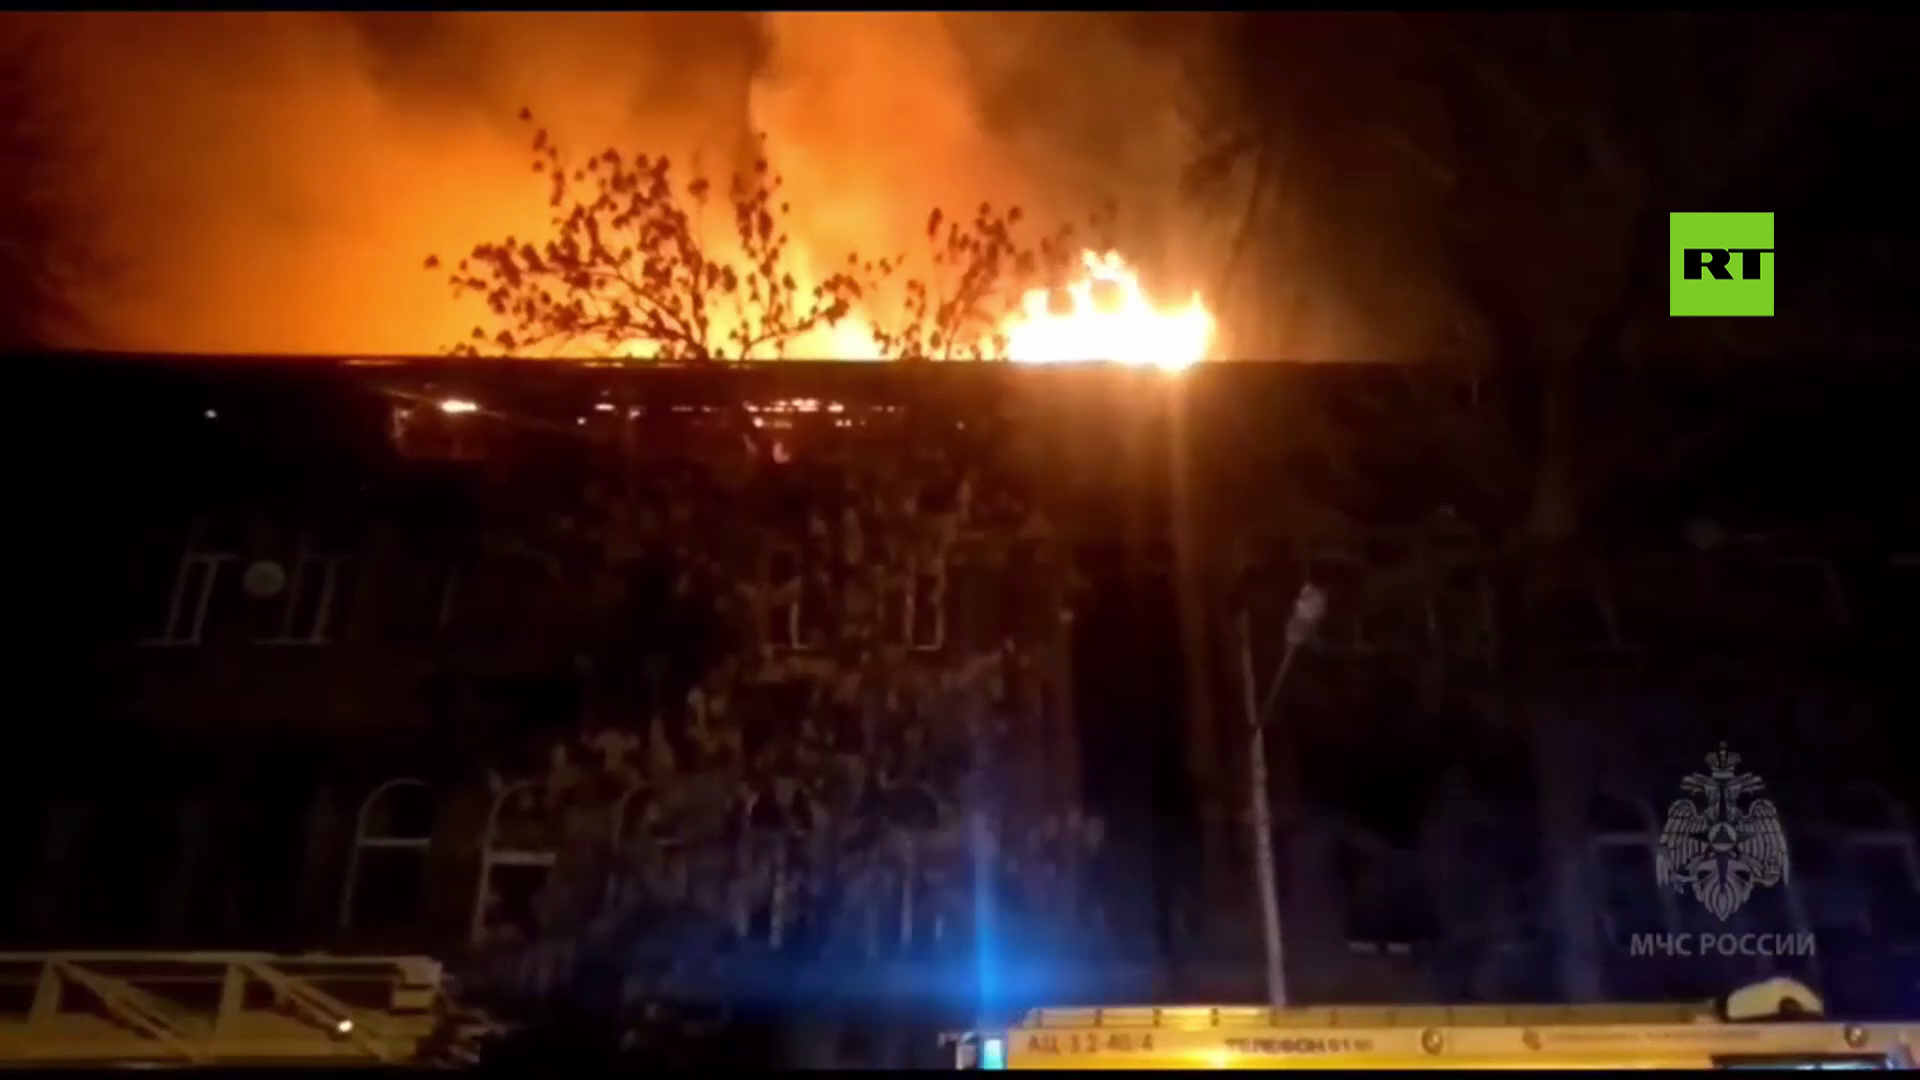 بالفيديو.. حريق يندلع مجددا في مبنى تاريخي وسط سامارا الروسية